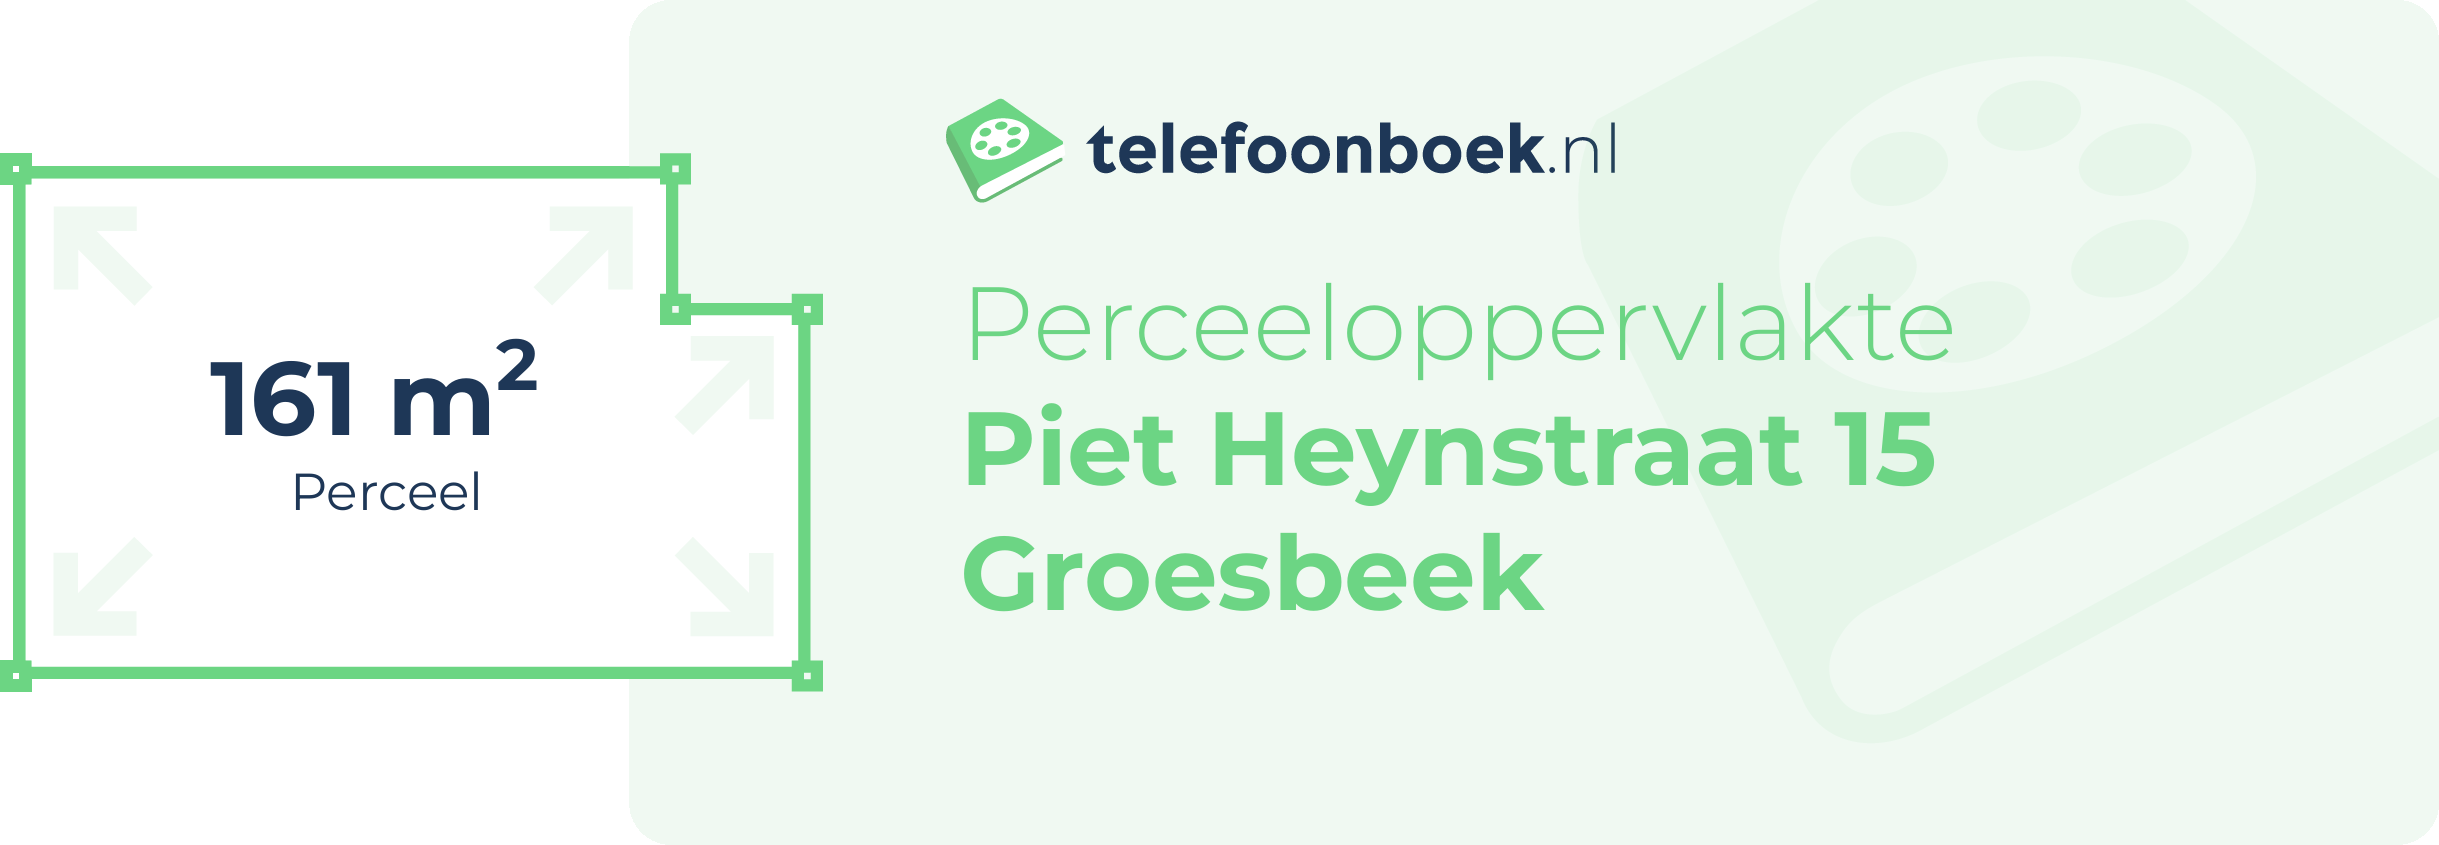 Perceeloppervlakte Piet Heynstraat 15 Groesbeek